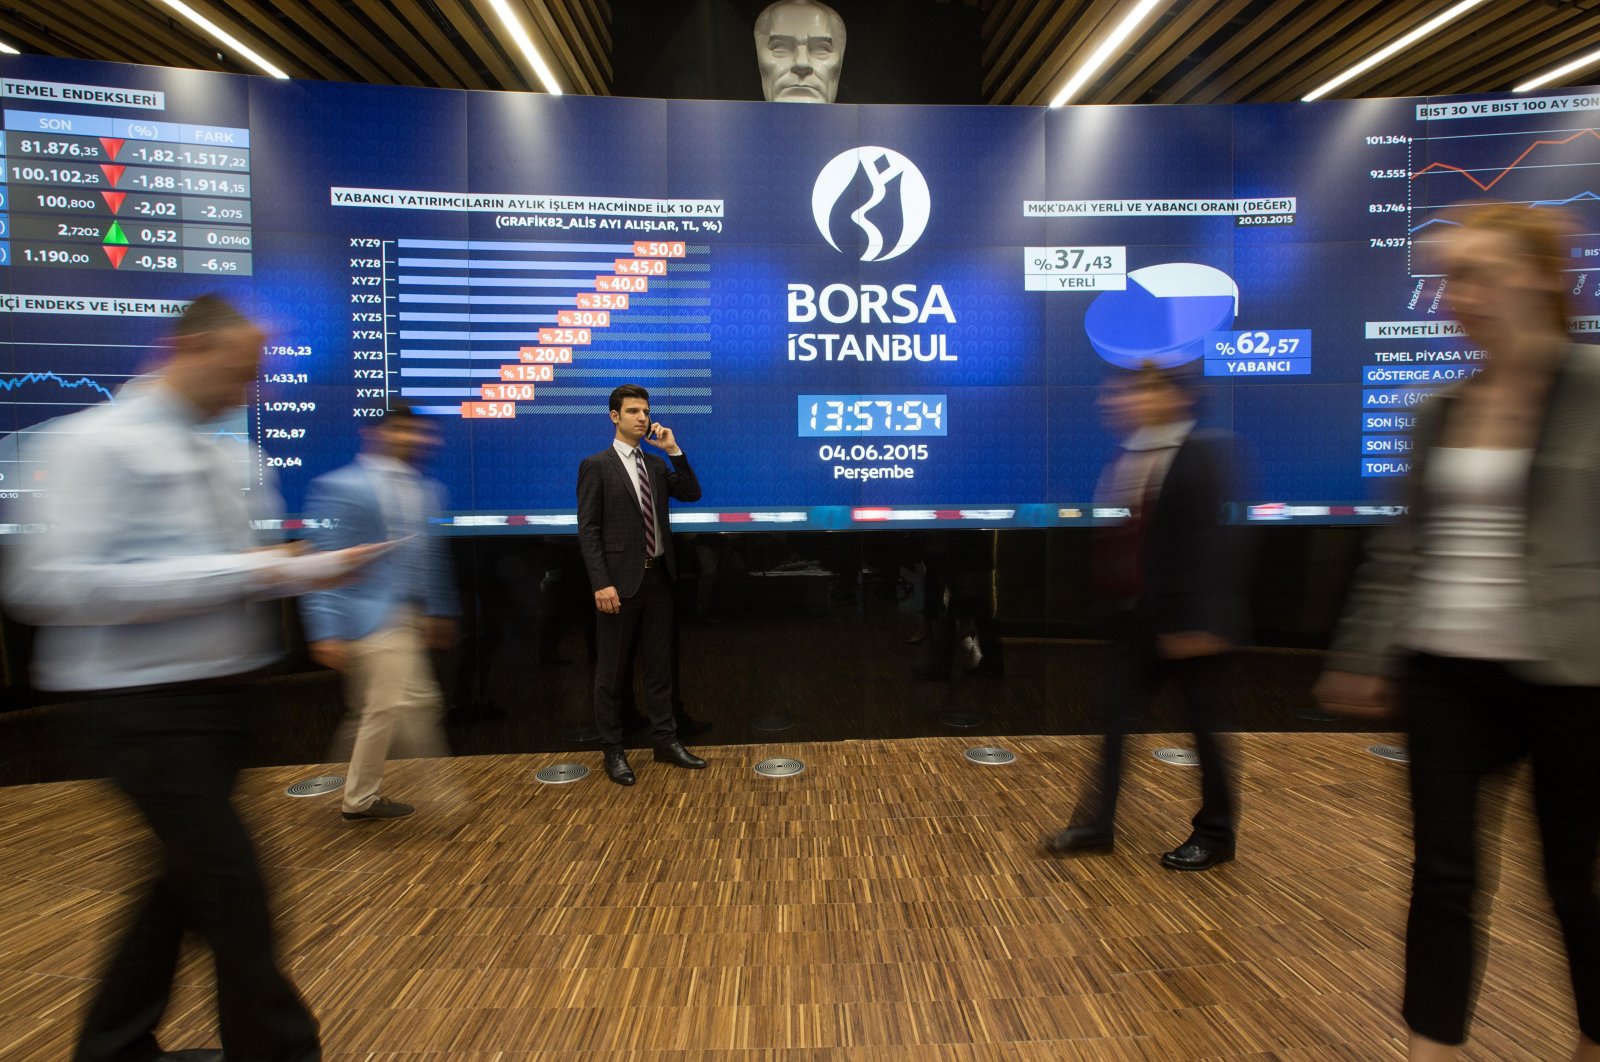 Bursa Turki melonjak setelah penutupan terkait gempa selama 5 hari, tindakan pemerintah